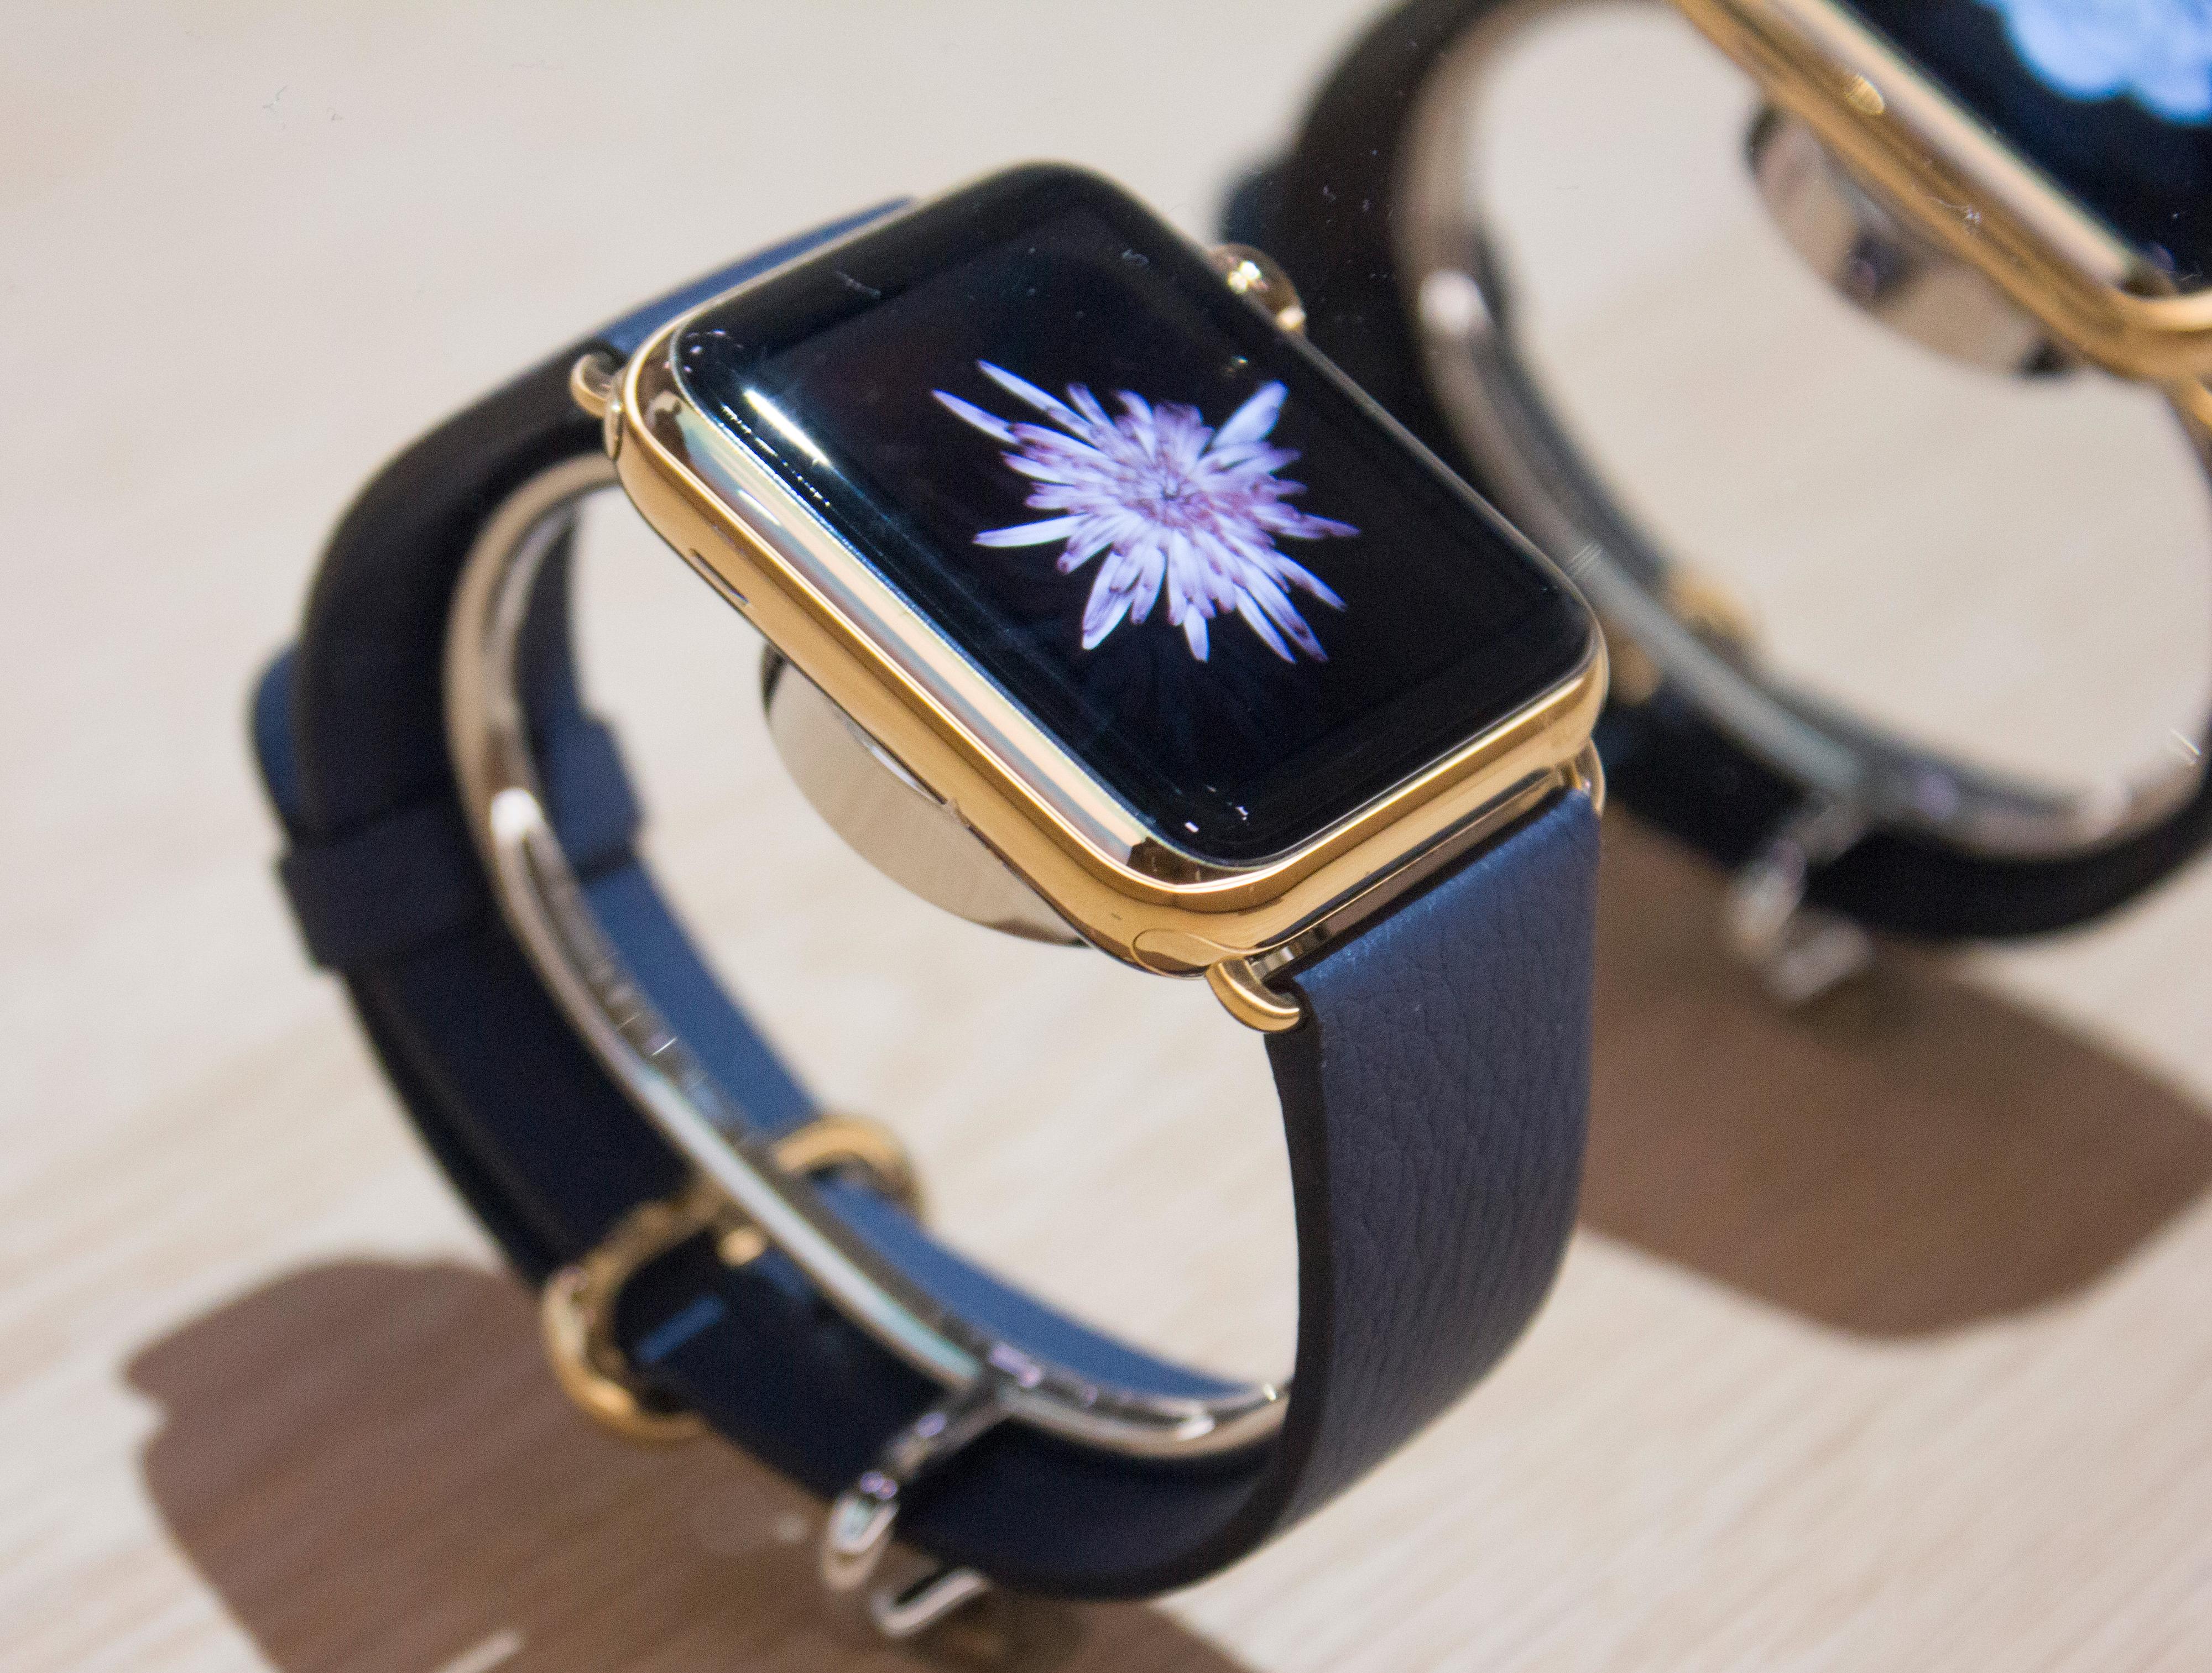 Dyreste variant Apple Watch skal koste over 130 000 kroner. Det som kanskje var slike klokker ble utstilt inni et glassbord. Foto: Finn Jarle Kvalheim, Tek.no